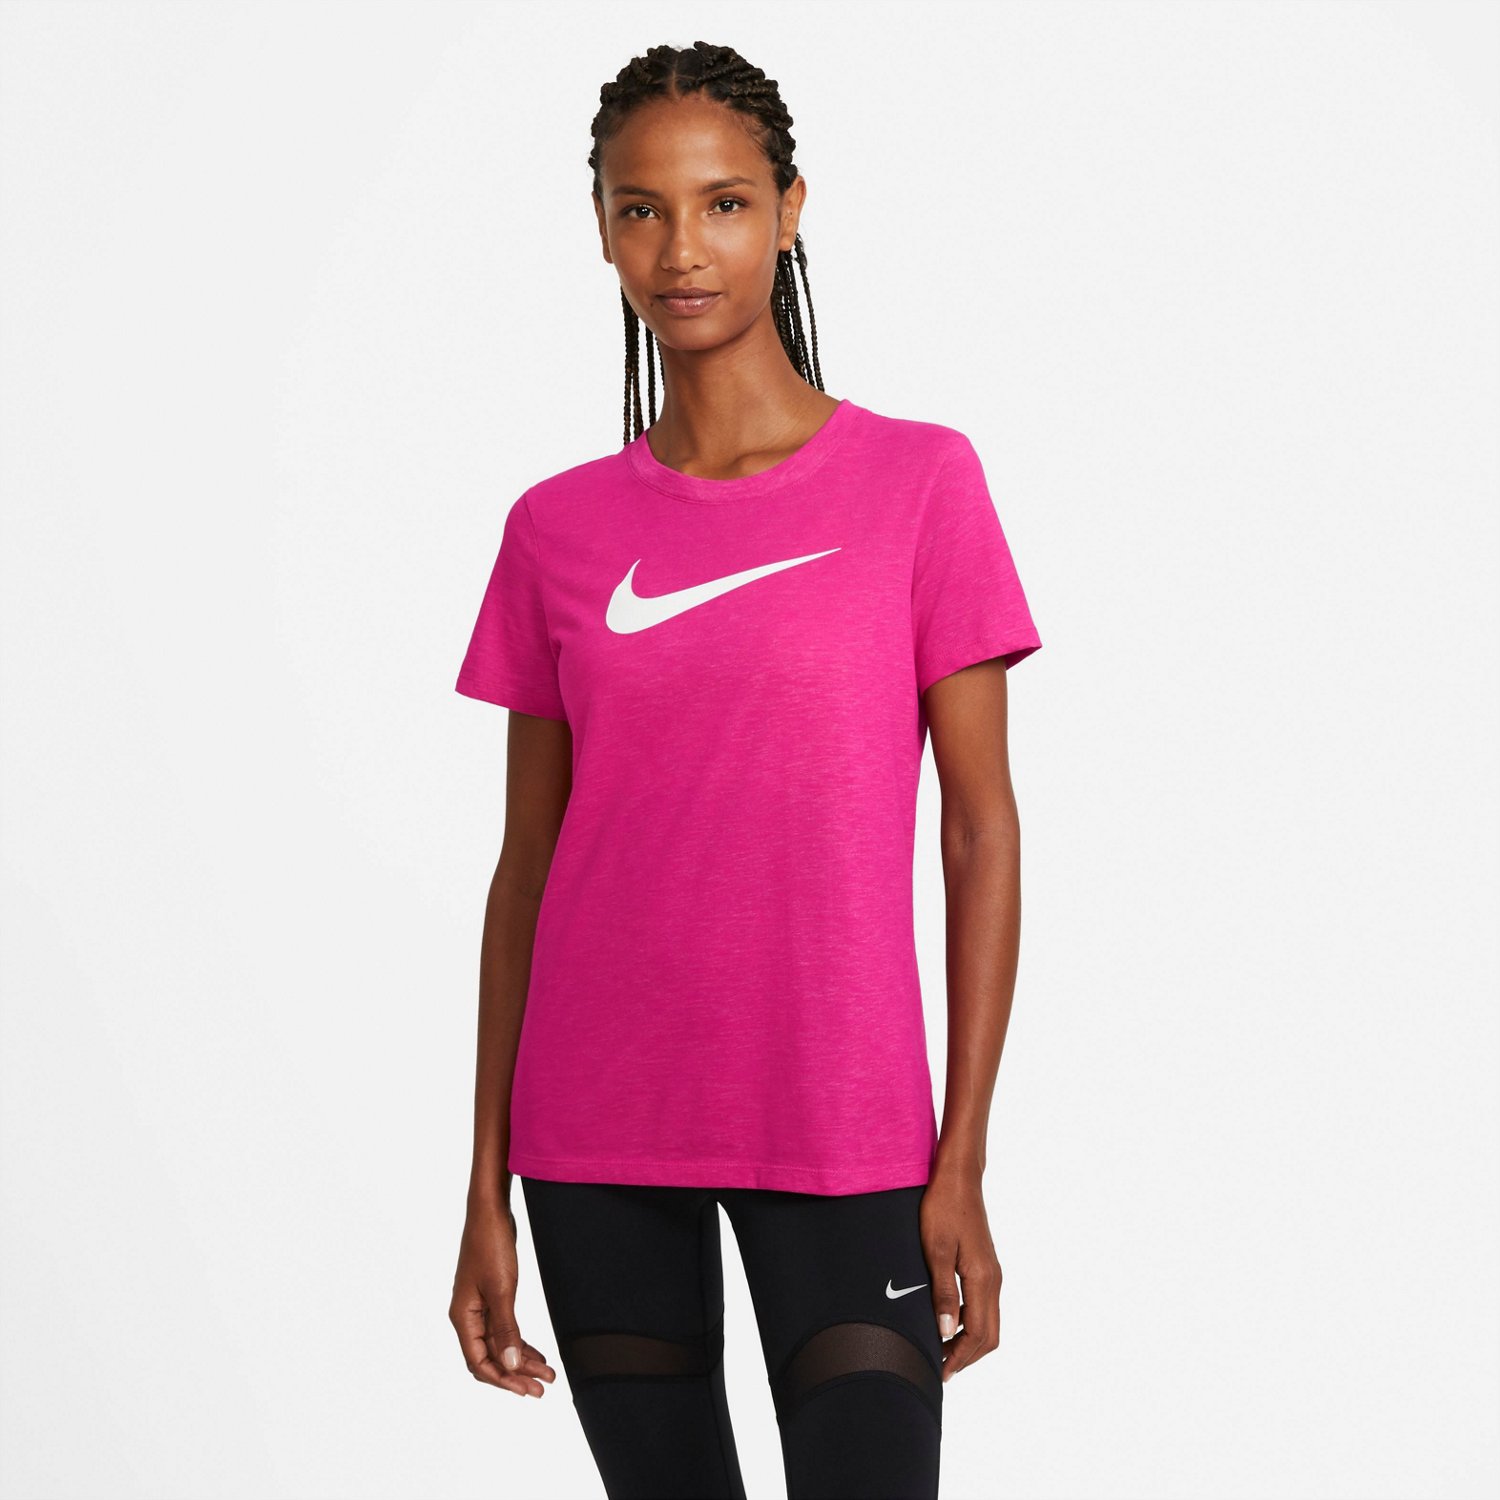 Nike Women's Dry Training Crew T-shirt | Academy